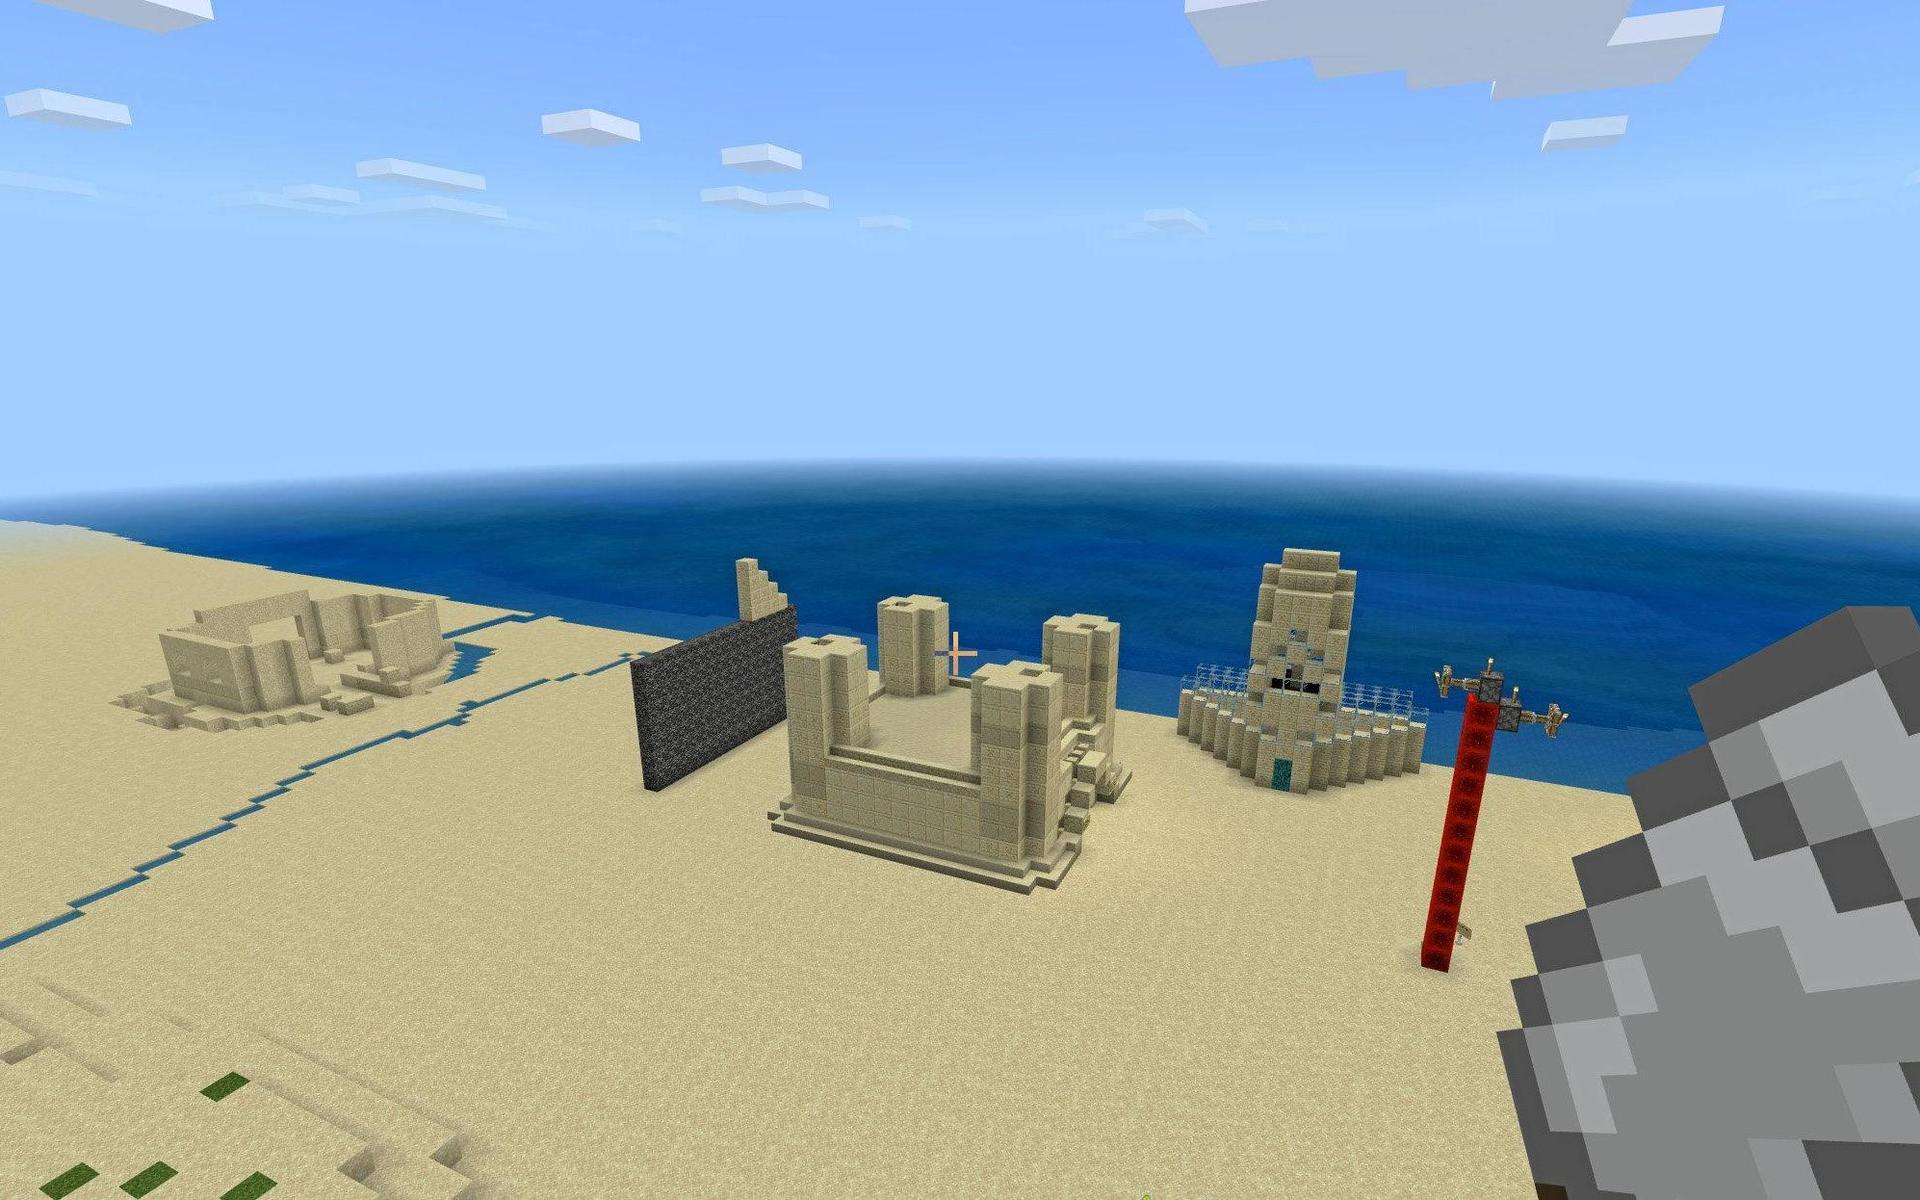 Ett av konstverken som byggts, men inte skickats in i Sandbyggartävling i Minecraft.